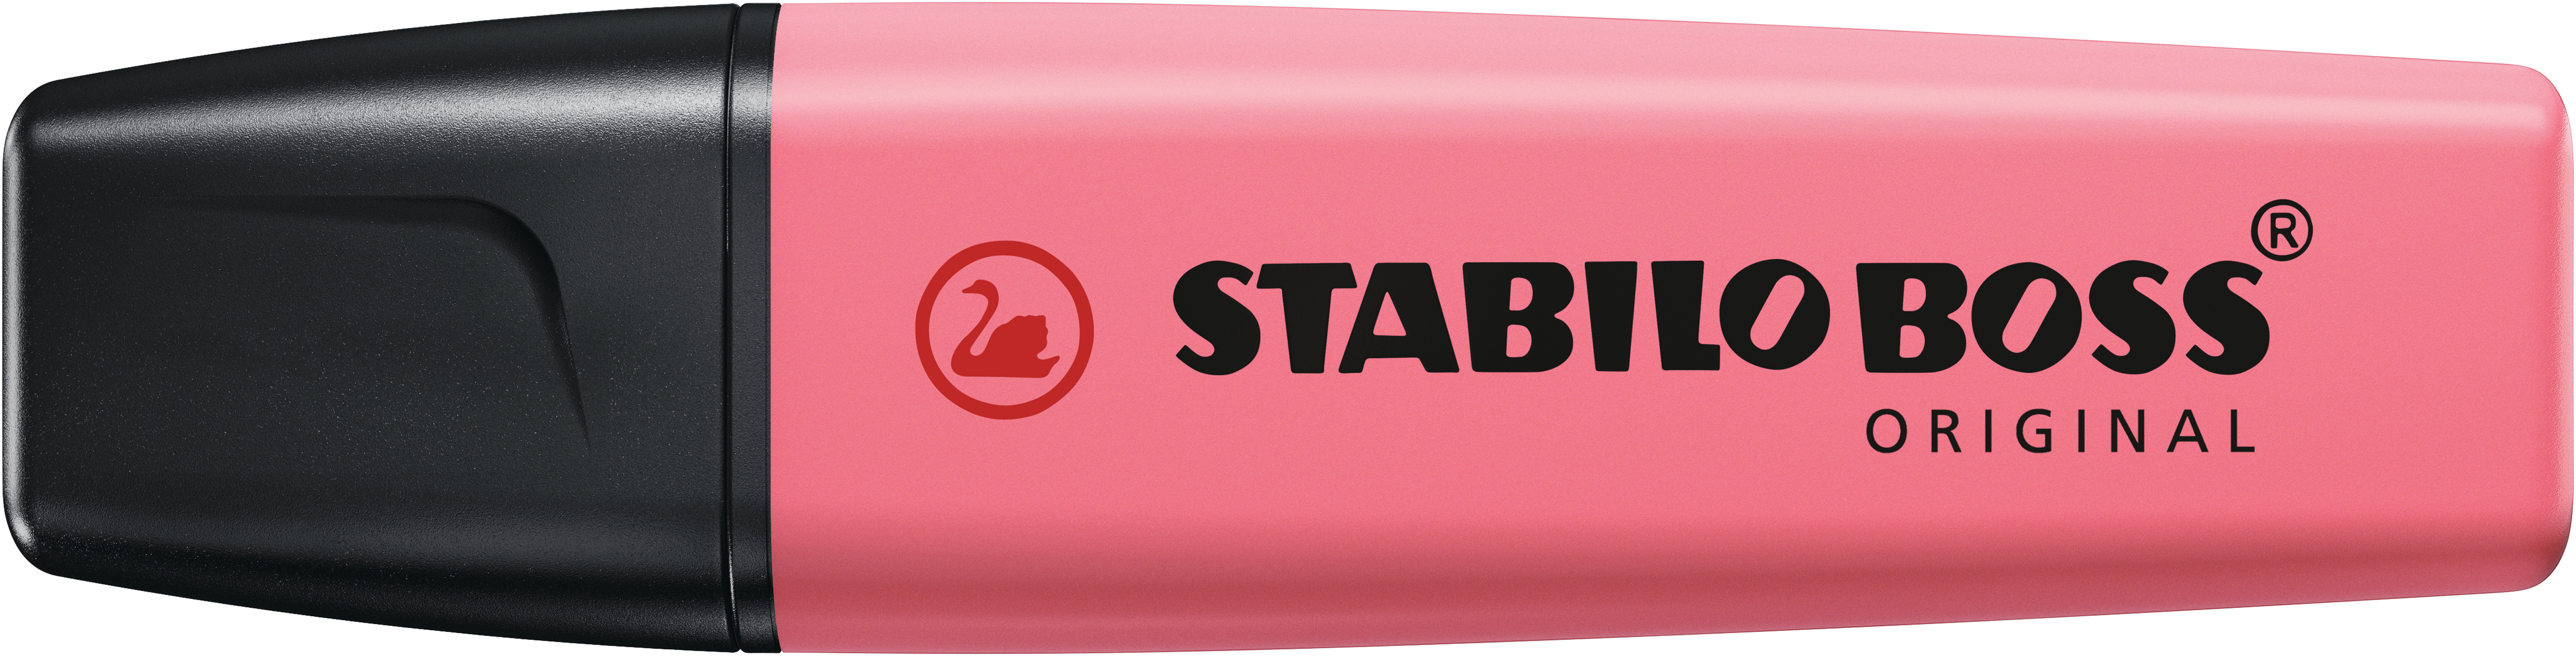 STABILO Textmarker BOSS Pastell 70/150 Kirschblütenrosa<br>